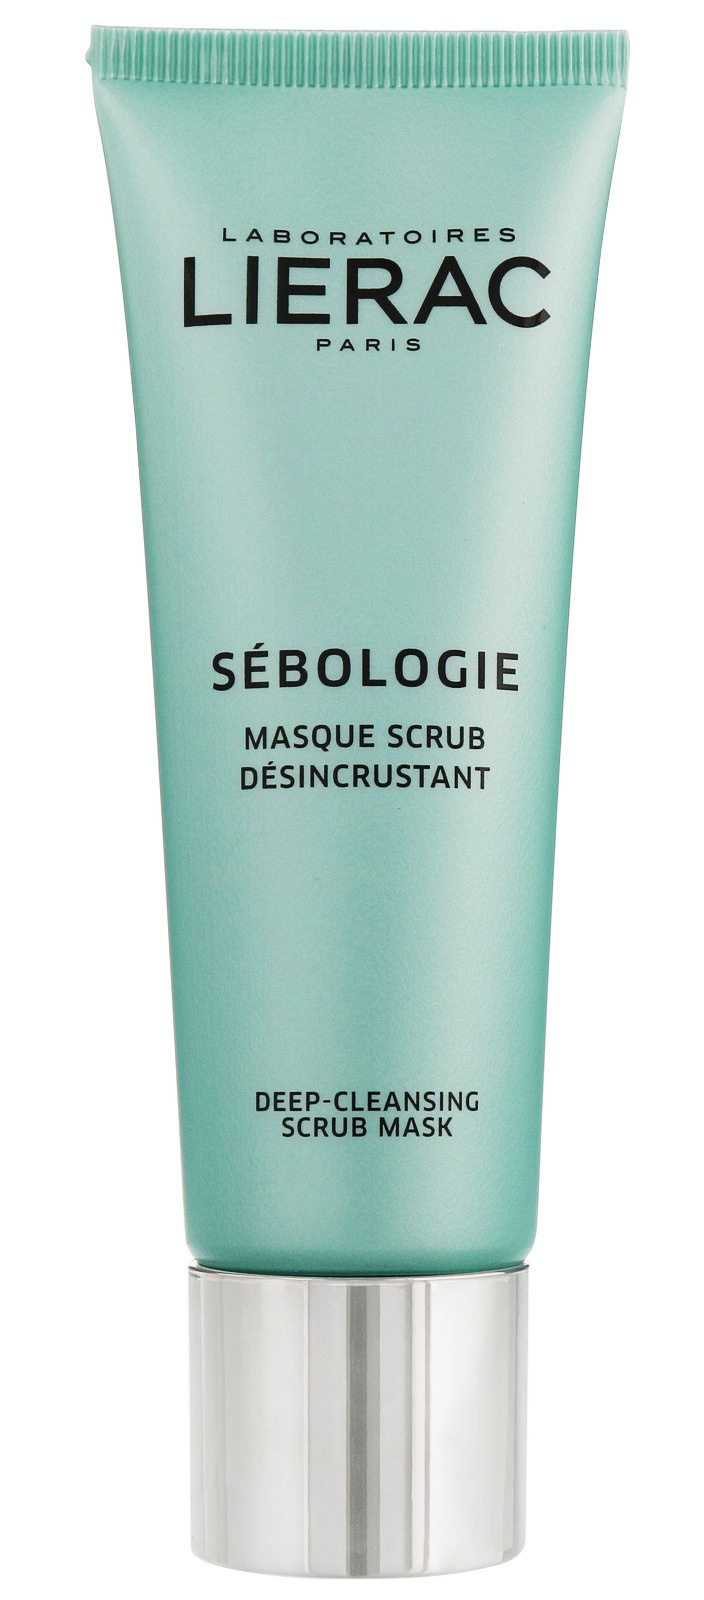 Lierac Sebologie Deep-Cleansing Scrub Mask